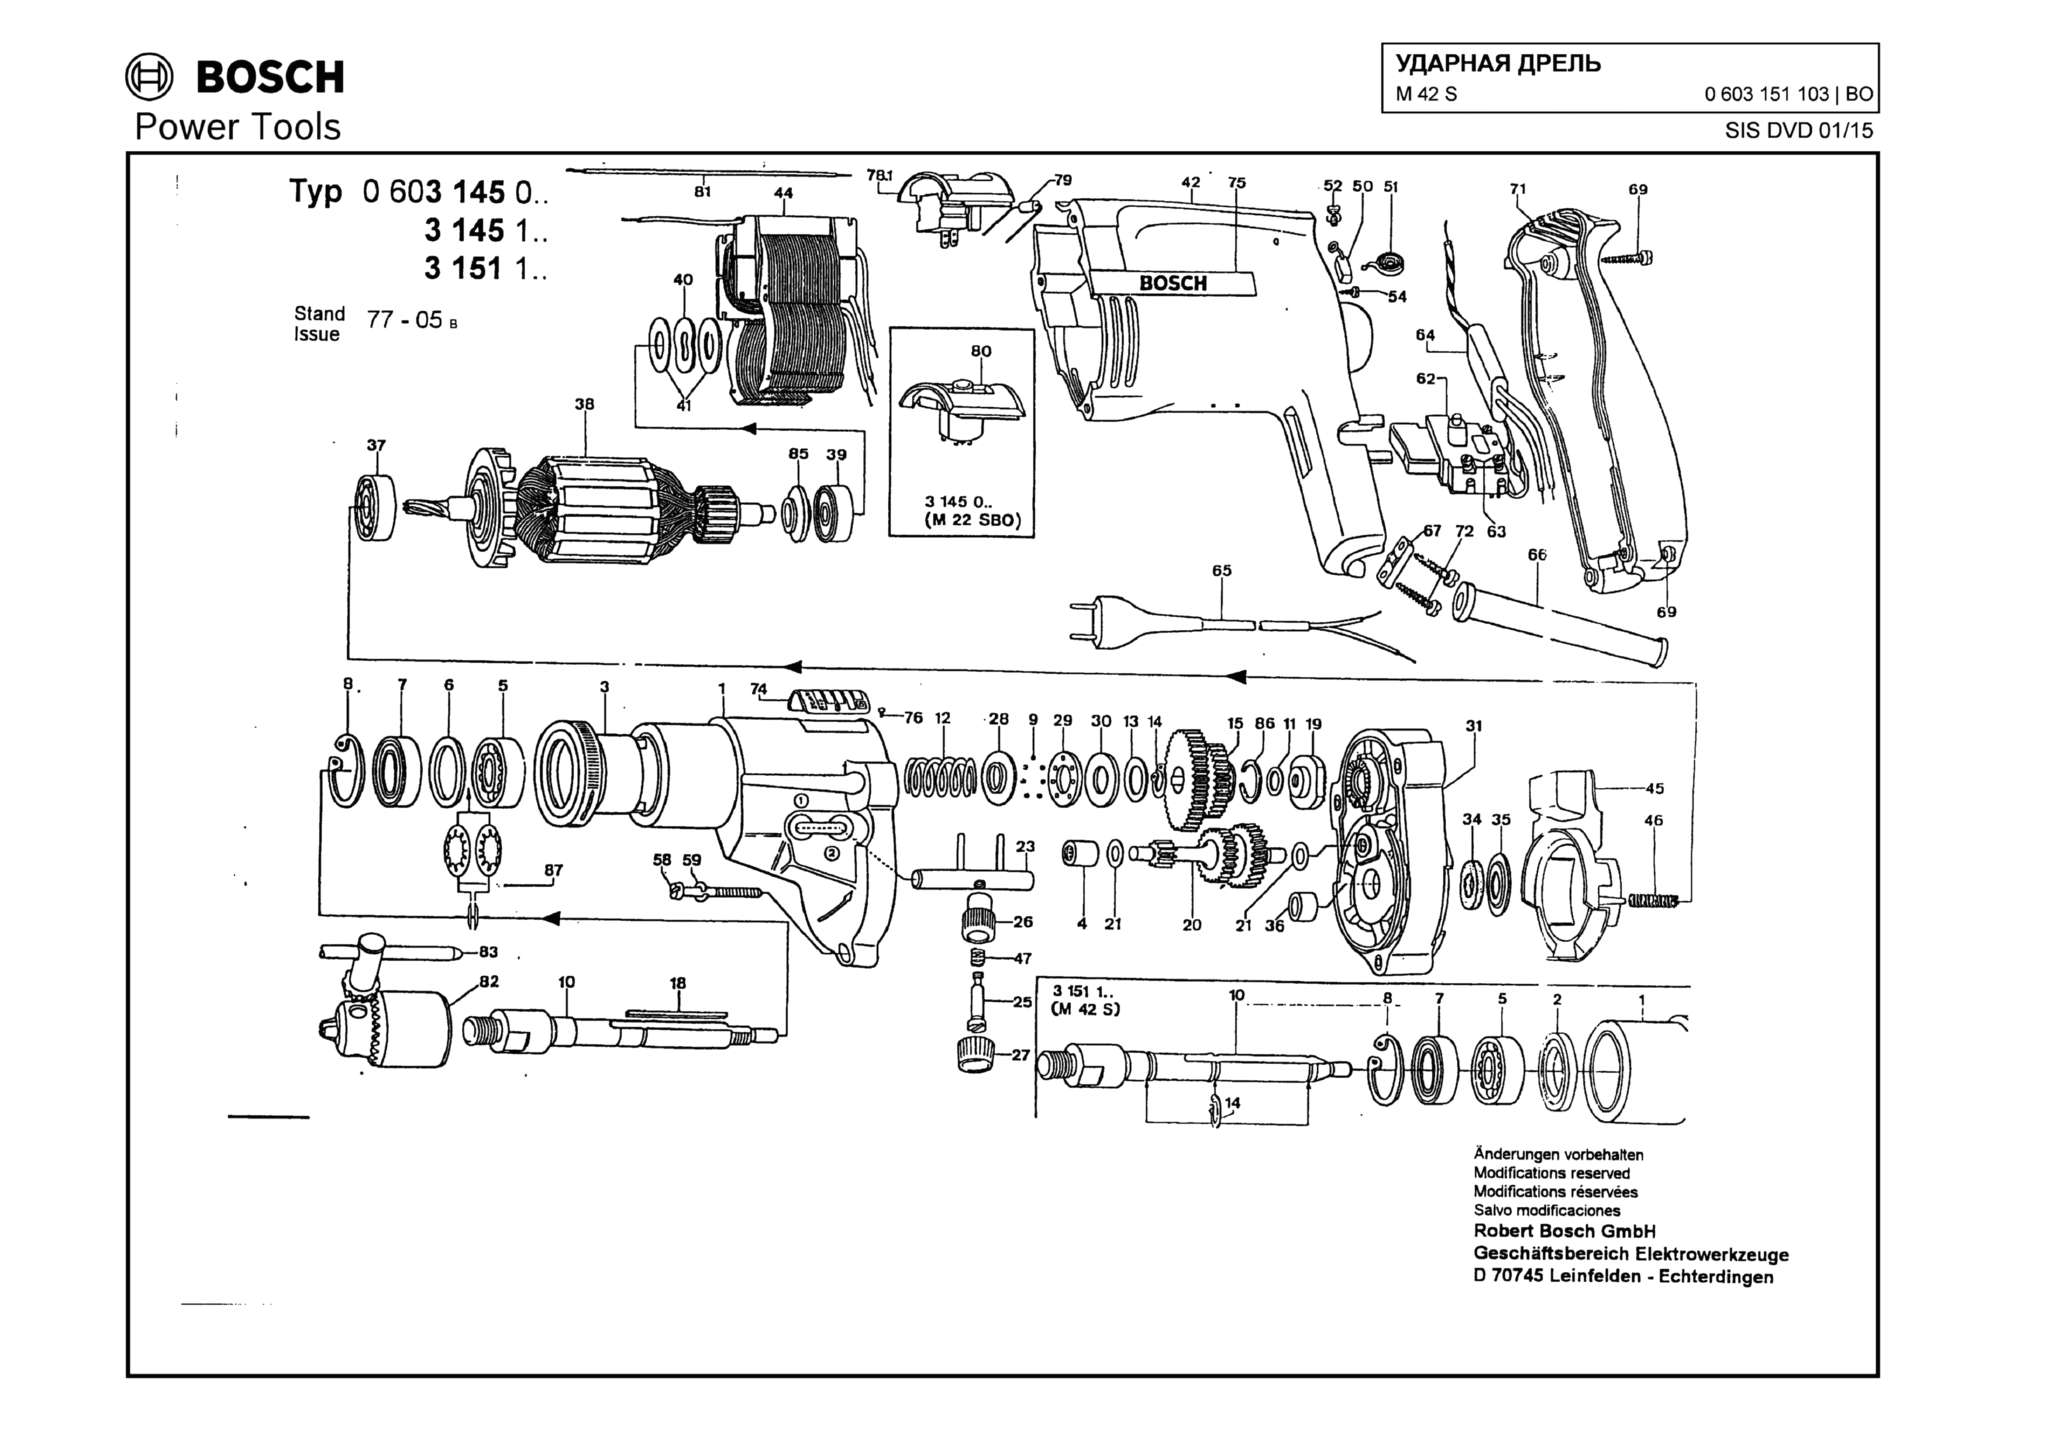 Запчасти, схема и деталировка Bosch M 42 S (ТИП 0603151103)